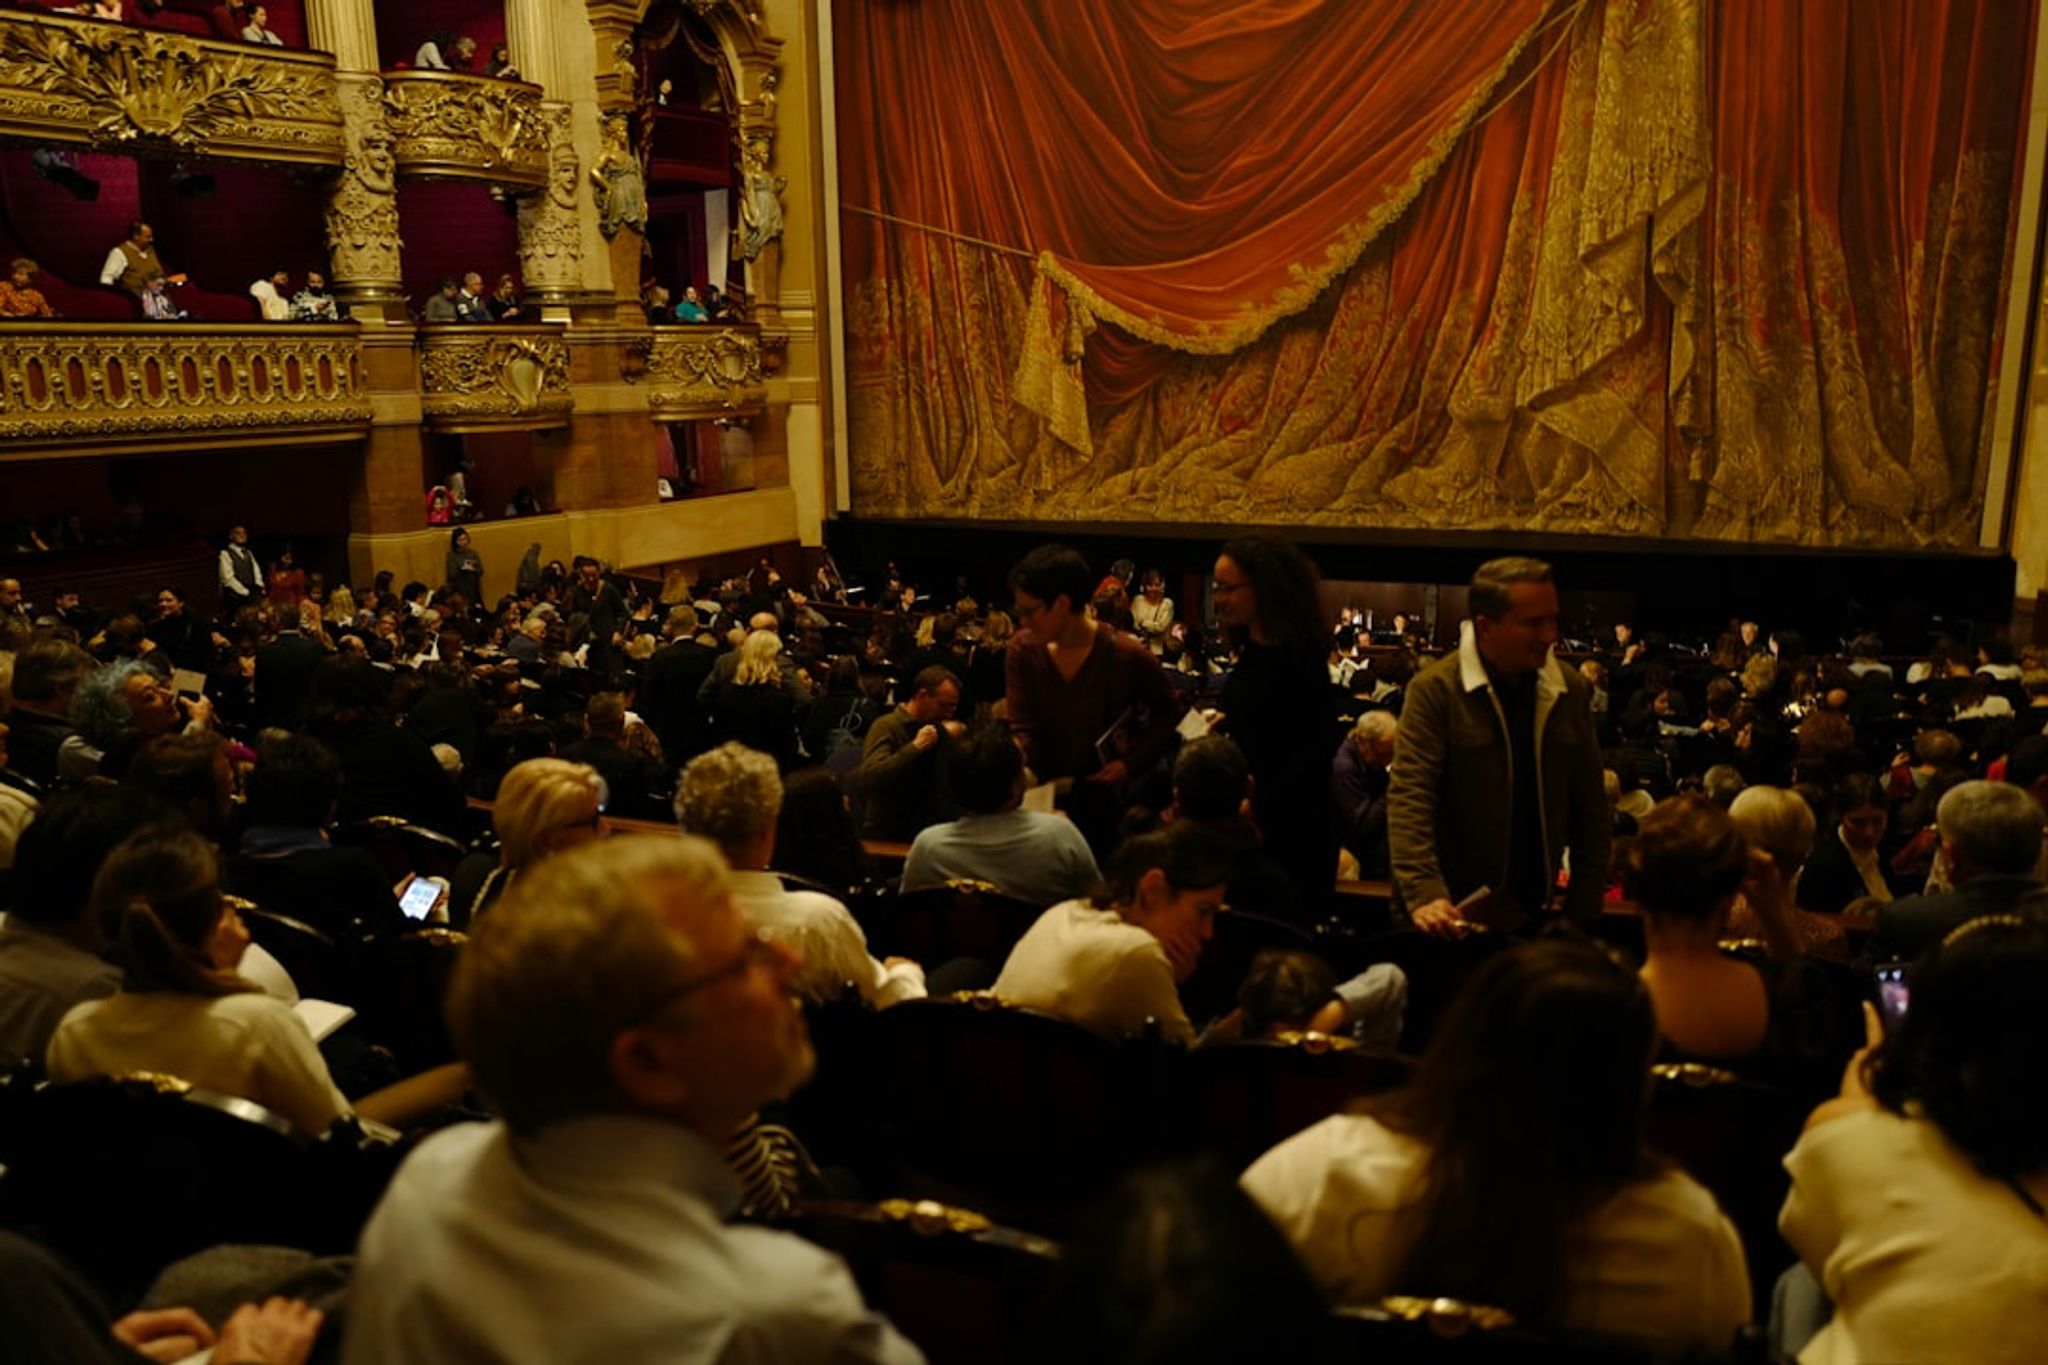 Ballett der Pariser Oper